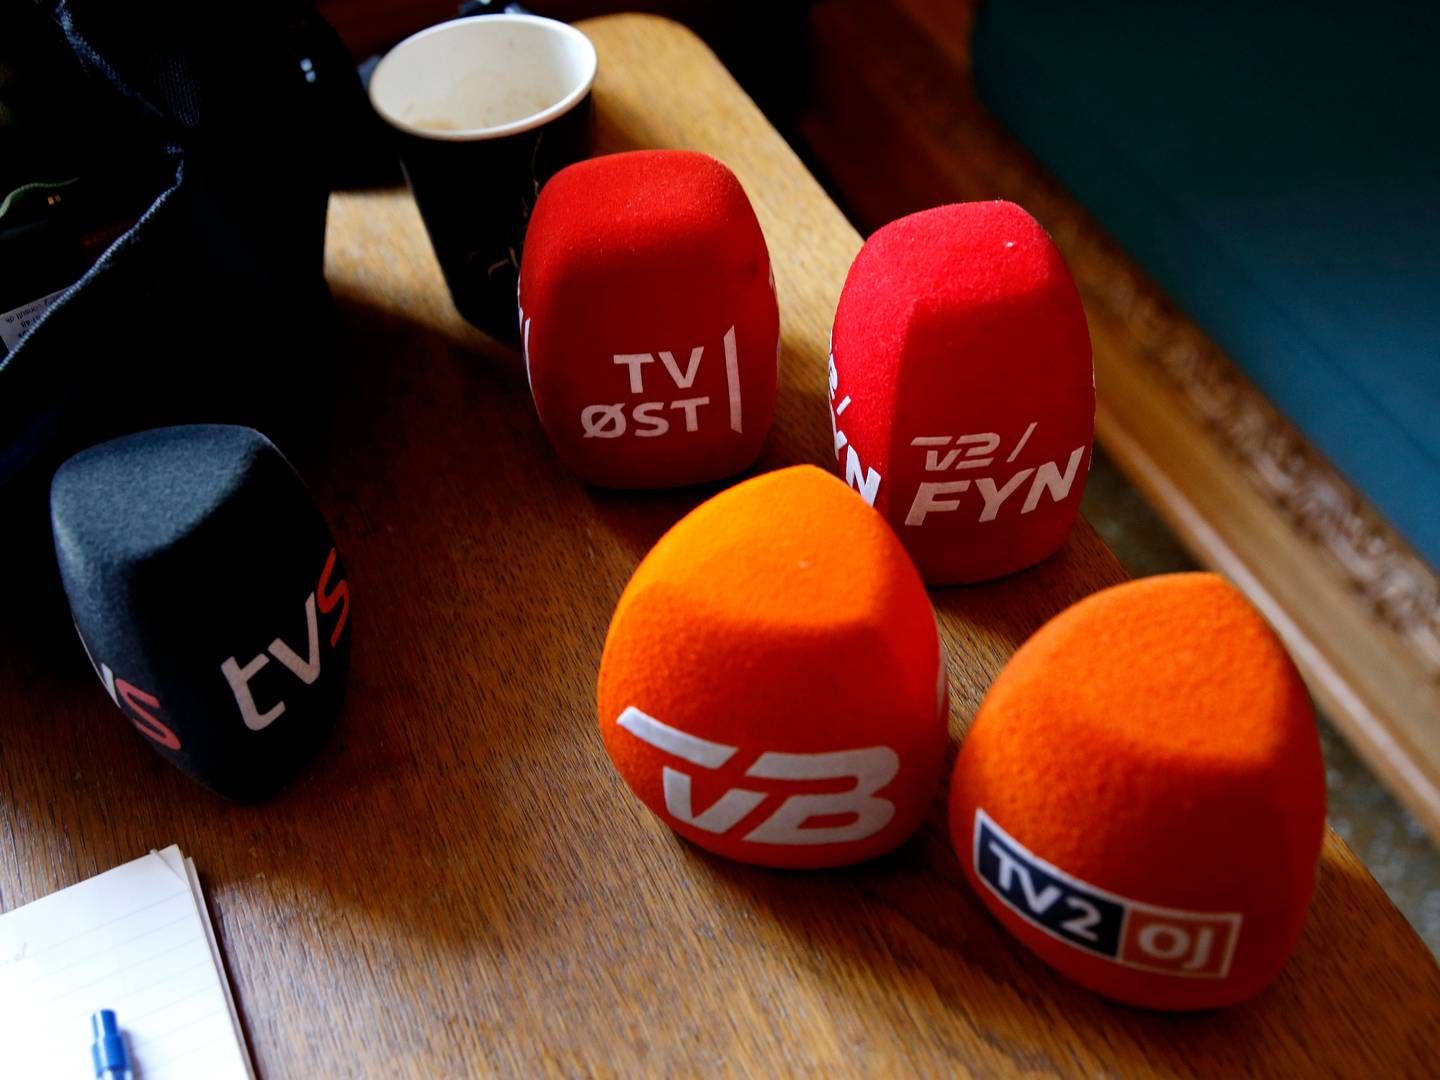 TV 2 Fyns bestyrelse har besluttet at stoppe samarbejdet med adm. direktør Esben Seerup. | Foto: Jens Dresling/Politiken/Ritzau Scanpix